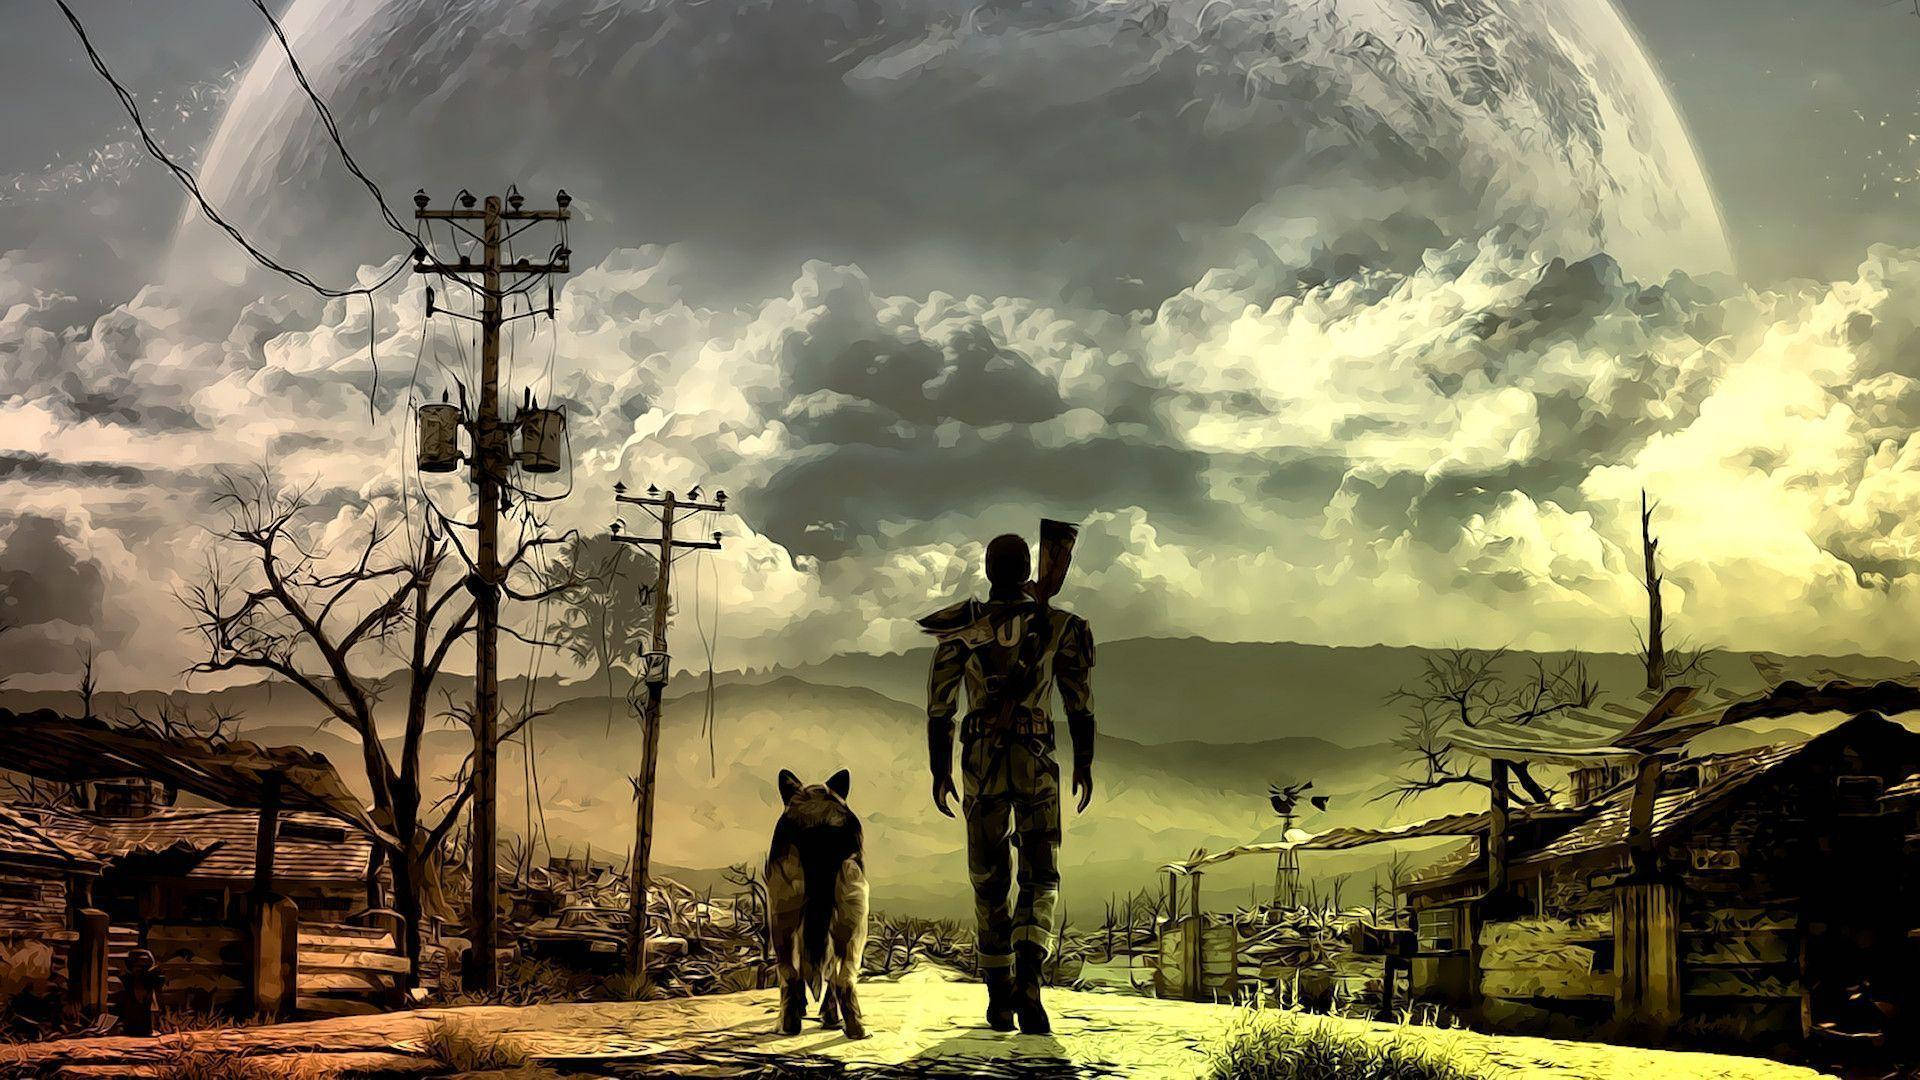 Tải ảnh nền Fallout miễn phí: Tận hưởng không khí hậu hạch Fallout với hình nền miễn phí! Đừng bỏ lỡ cơ hội để tải xuống những hình ảnh độc đáo và đầy màu sắc này, hoàn toàn miễn phí. Chọn một hình nền Fallout ưa thích và cập nhật ngay trên thiết bị của bạn ngay hôm nay!